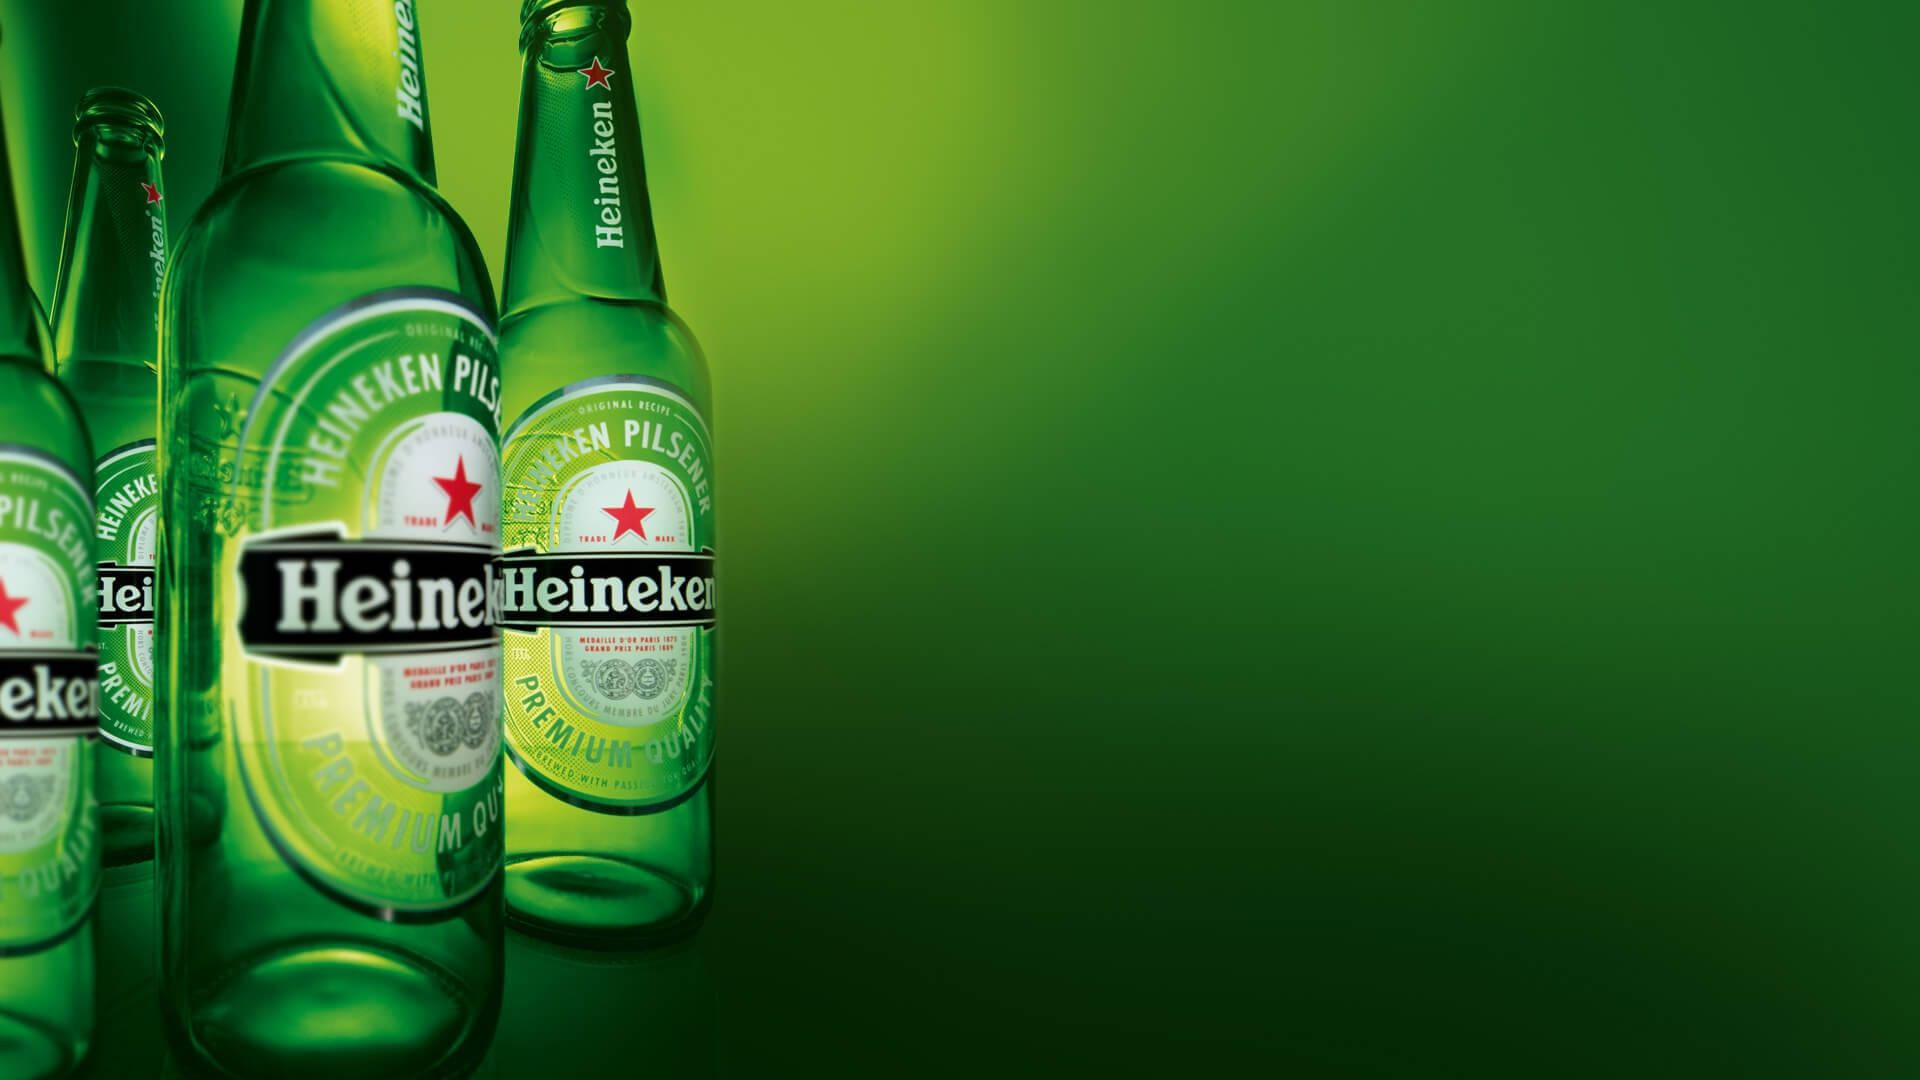 Chào mừng bạn đến thế giới của Heineken  Heinekencom